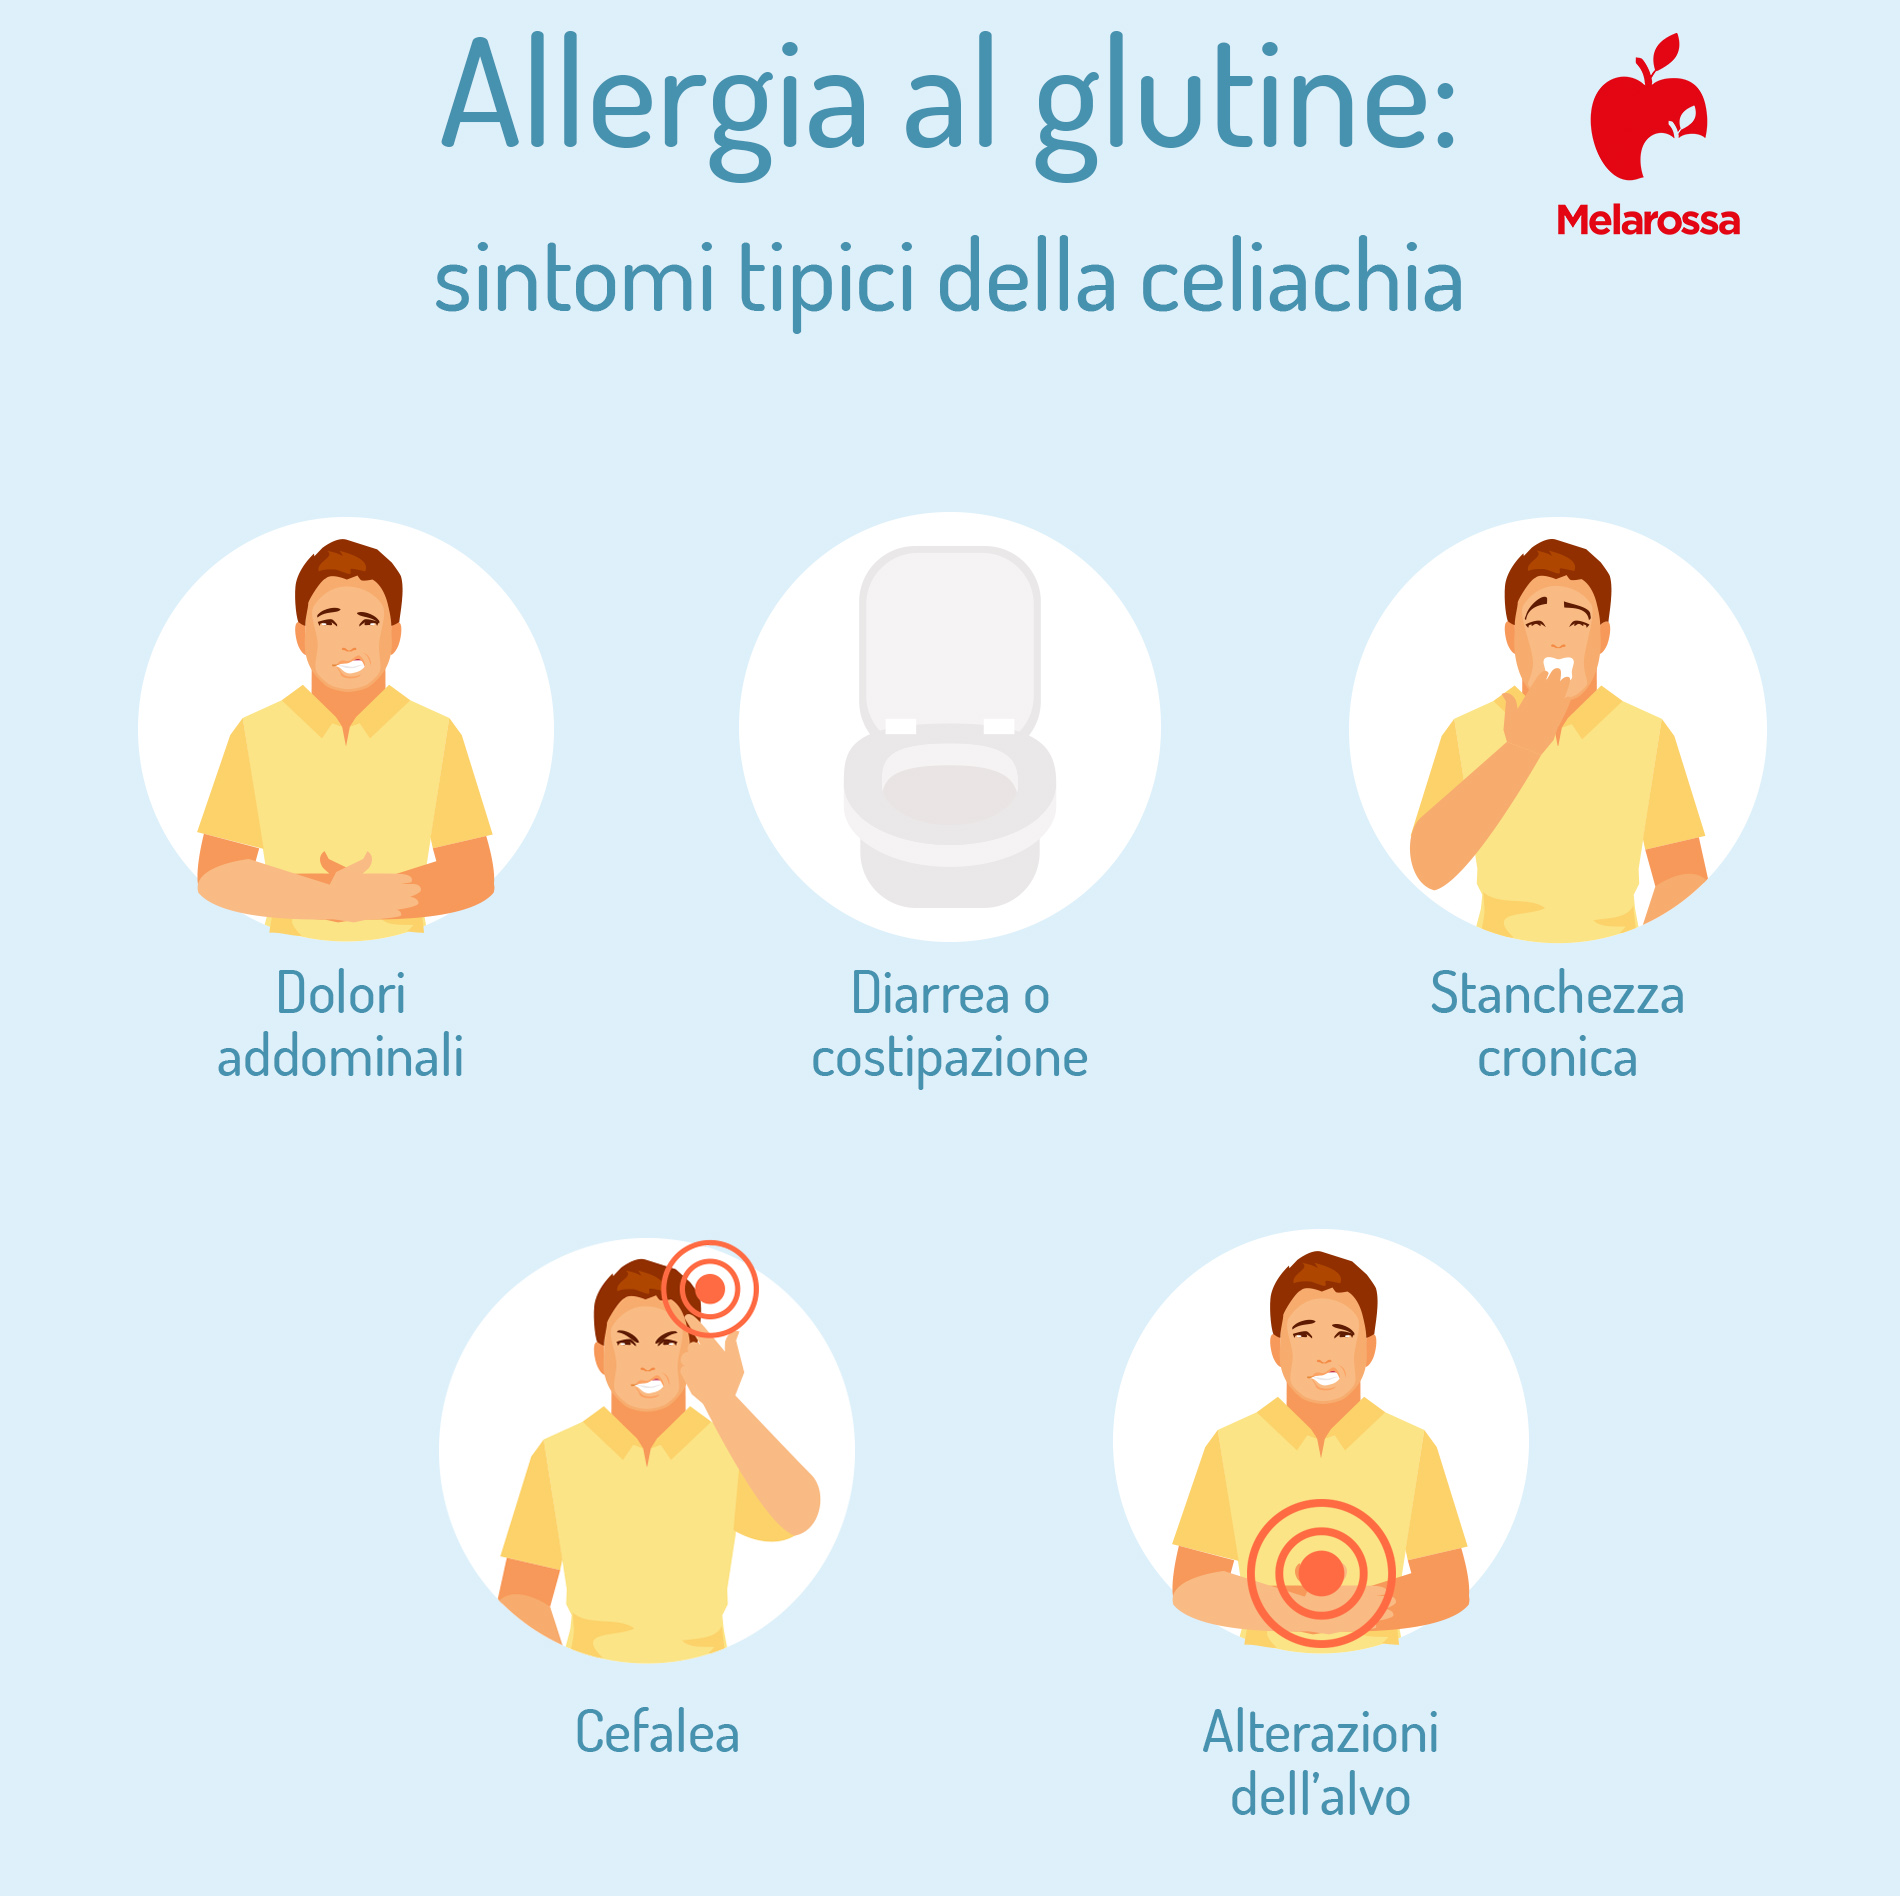 allergia al glutine: sintomi